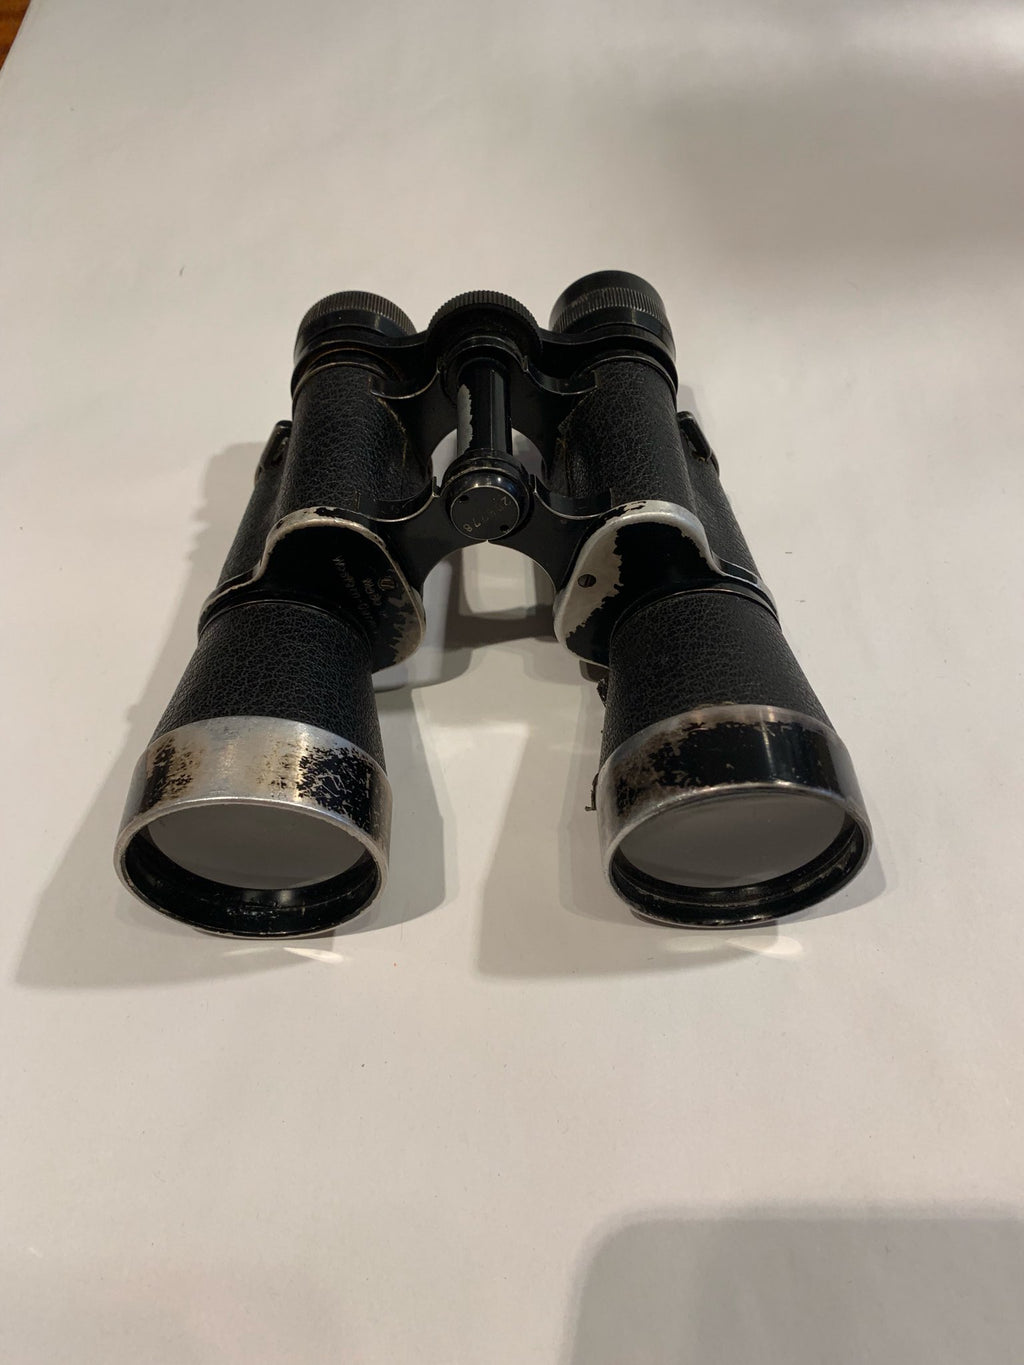 Metal vintage black binoculars